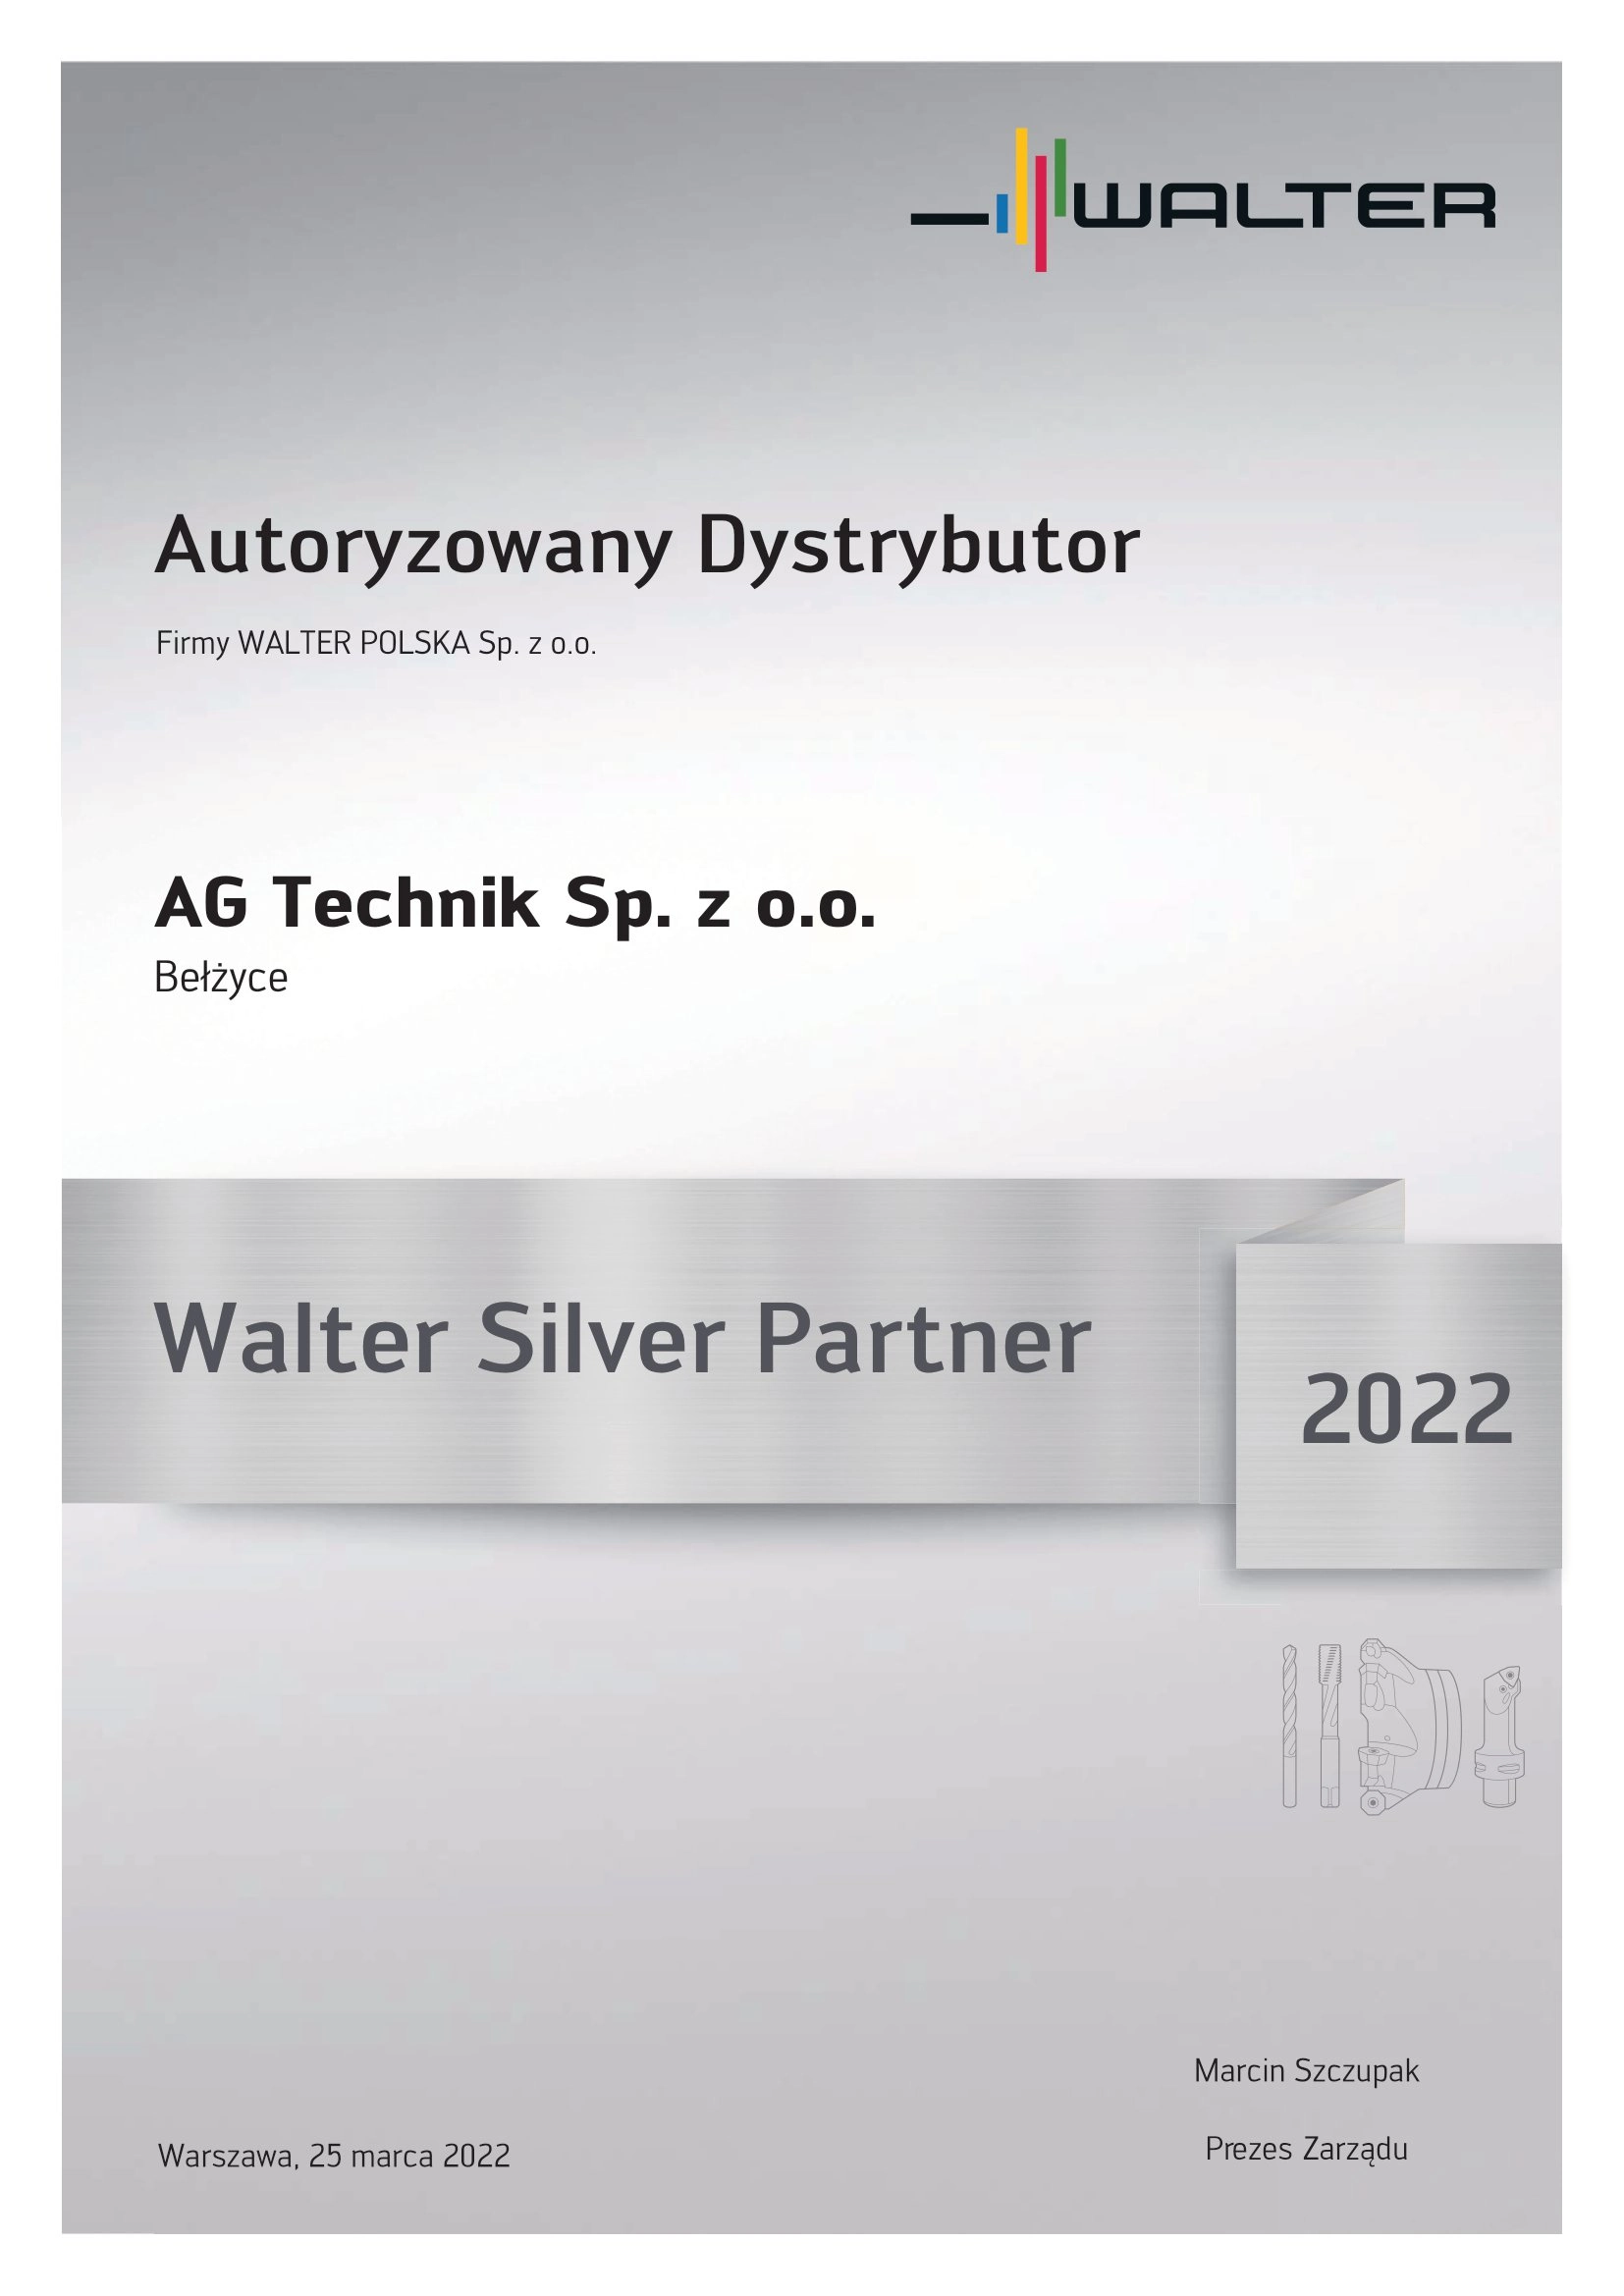 AG TECHNIK Autoryzowany Dystrybutor Firmy Walter Polska certyfikat